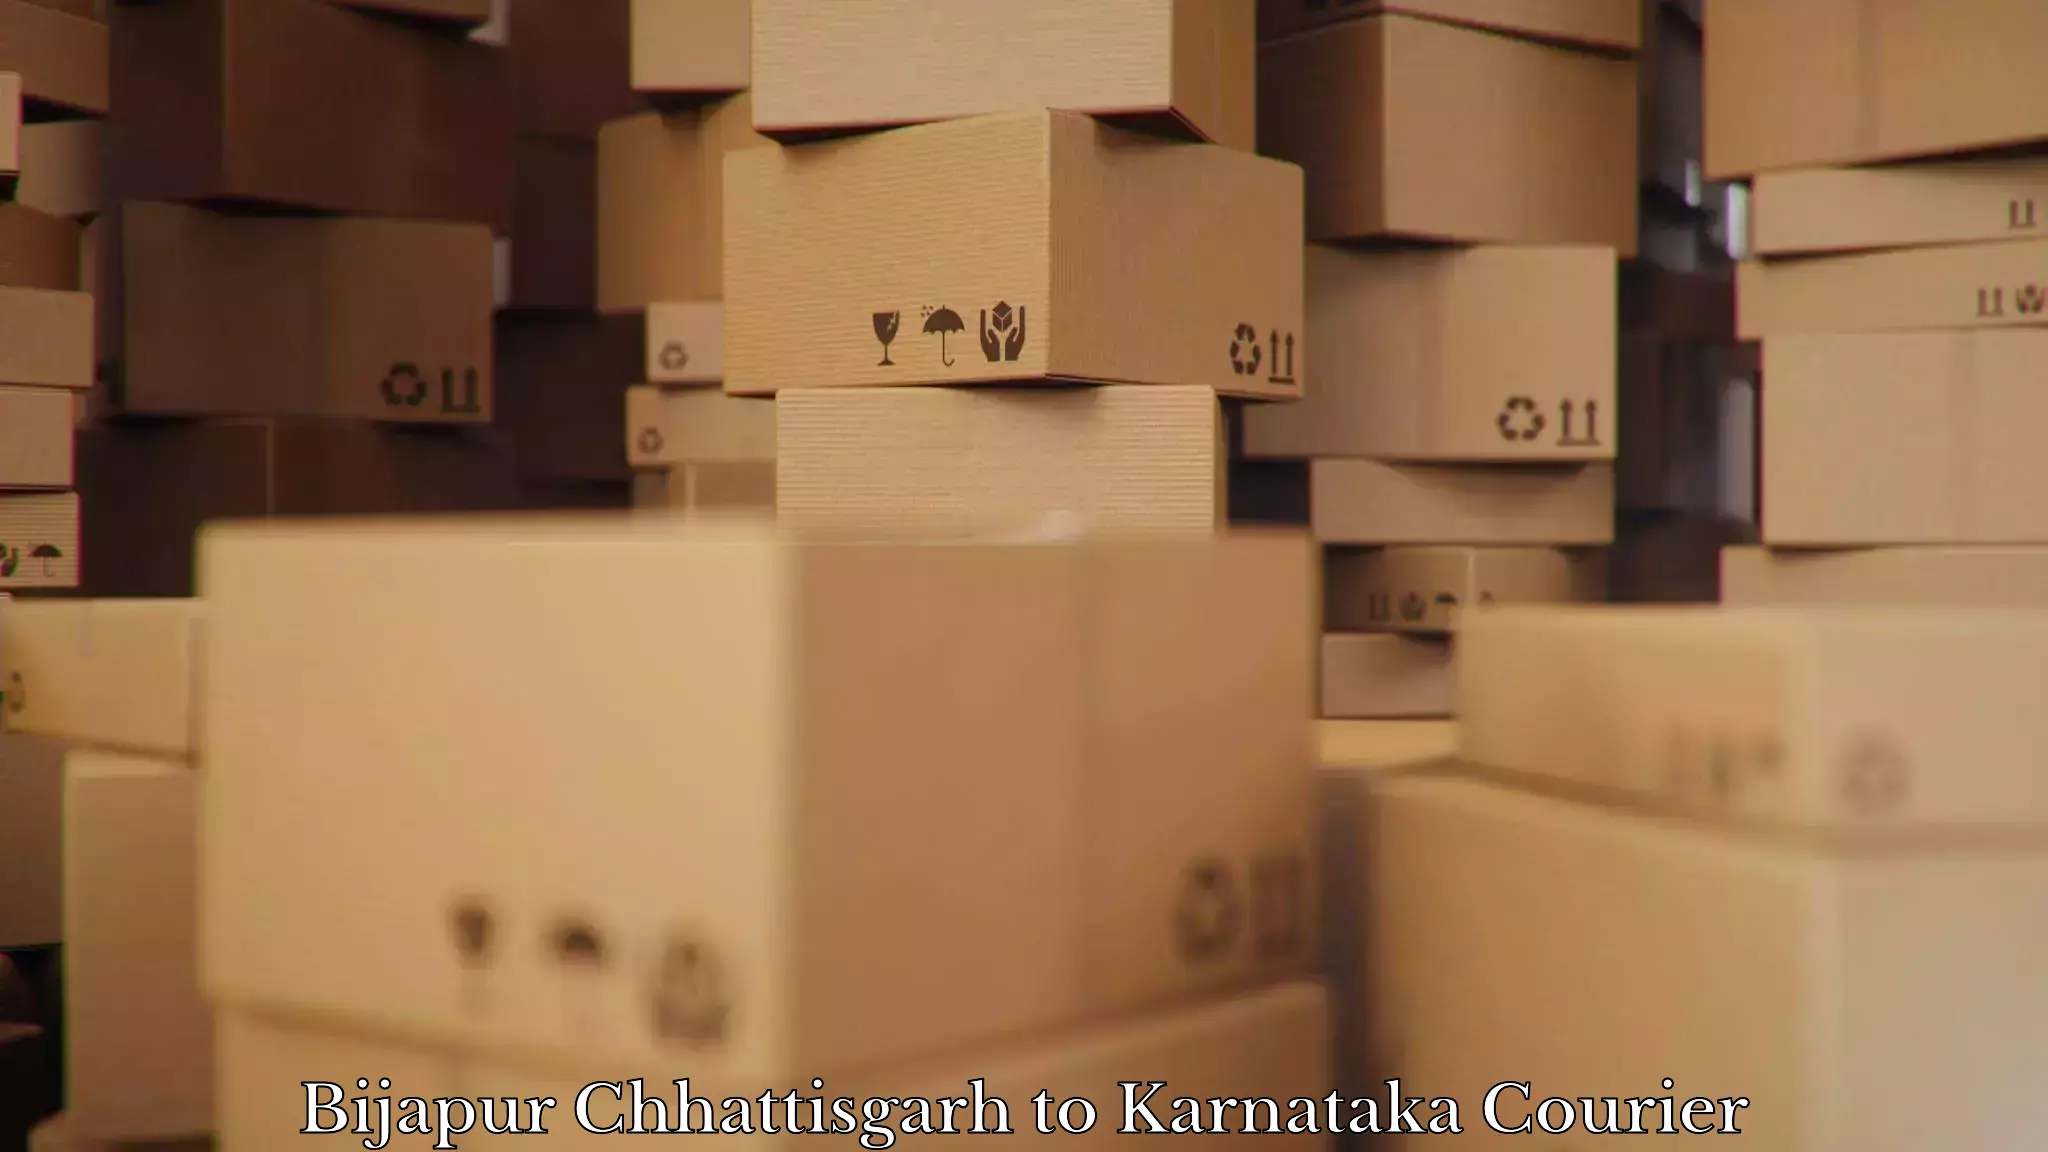 Household goods movers and packers Bijapur Chhattisgarh to Karnataka